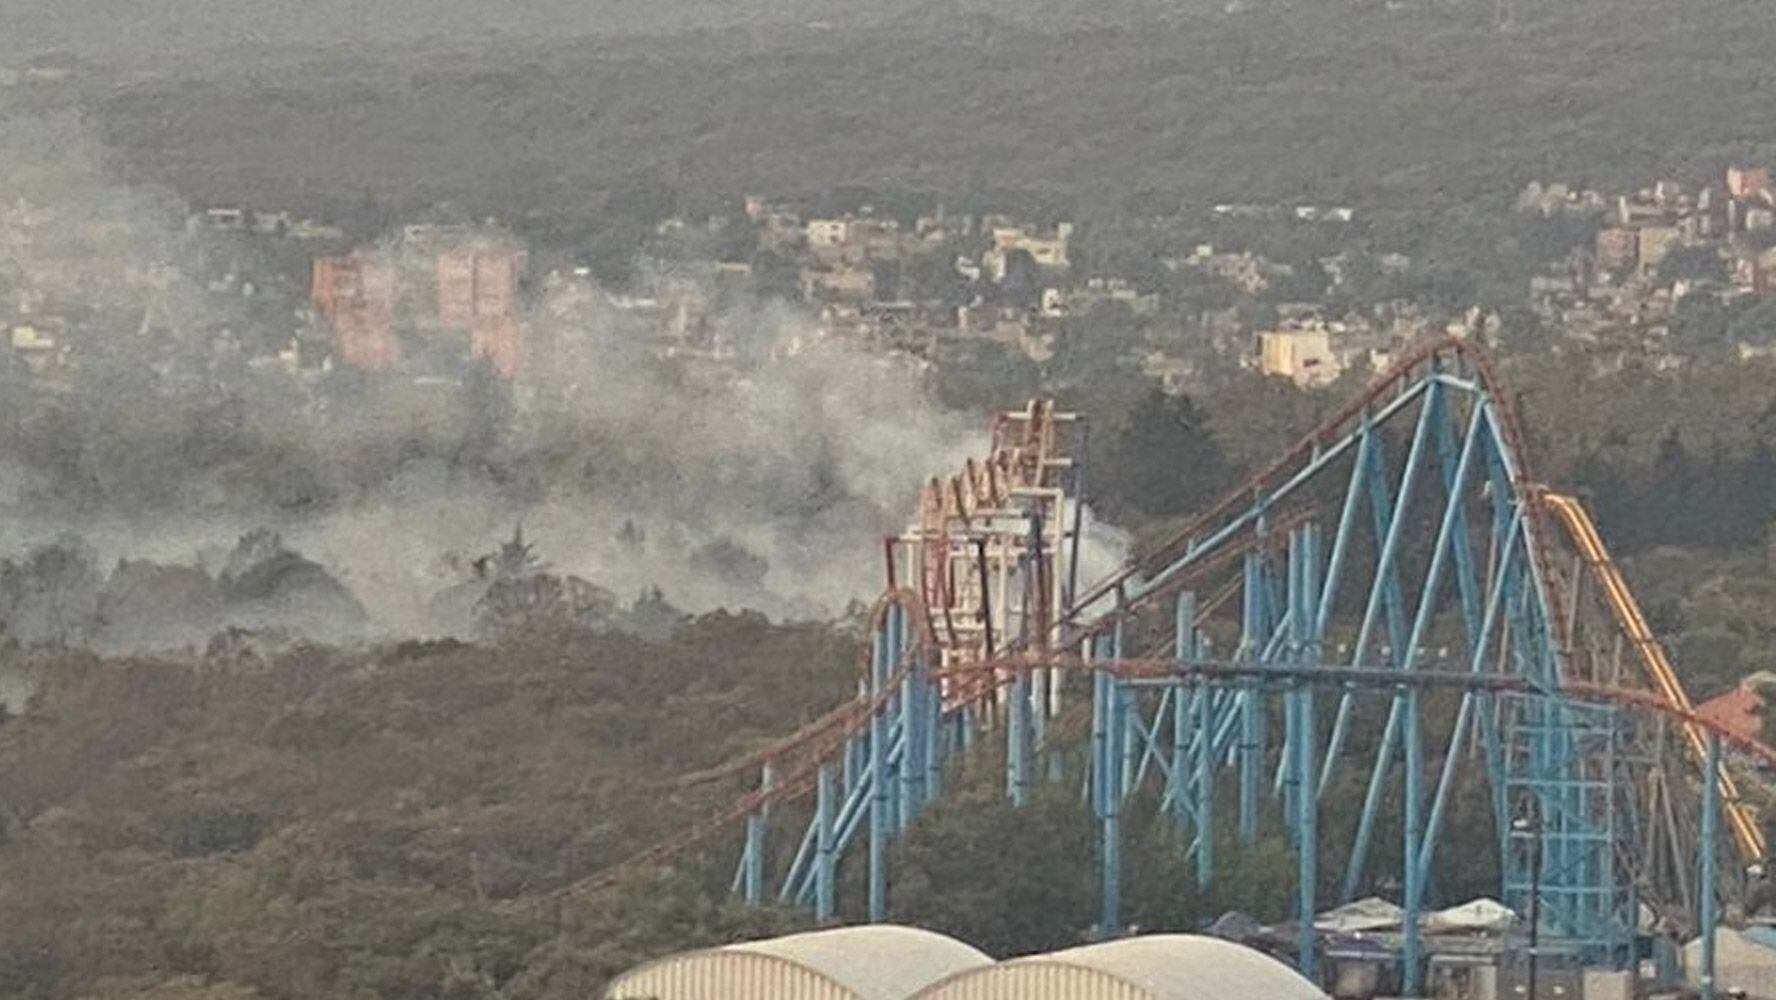 El incendio se registró en los alrededores del parque de diversiones Six Flags.